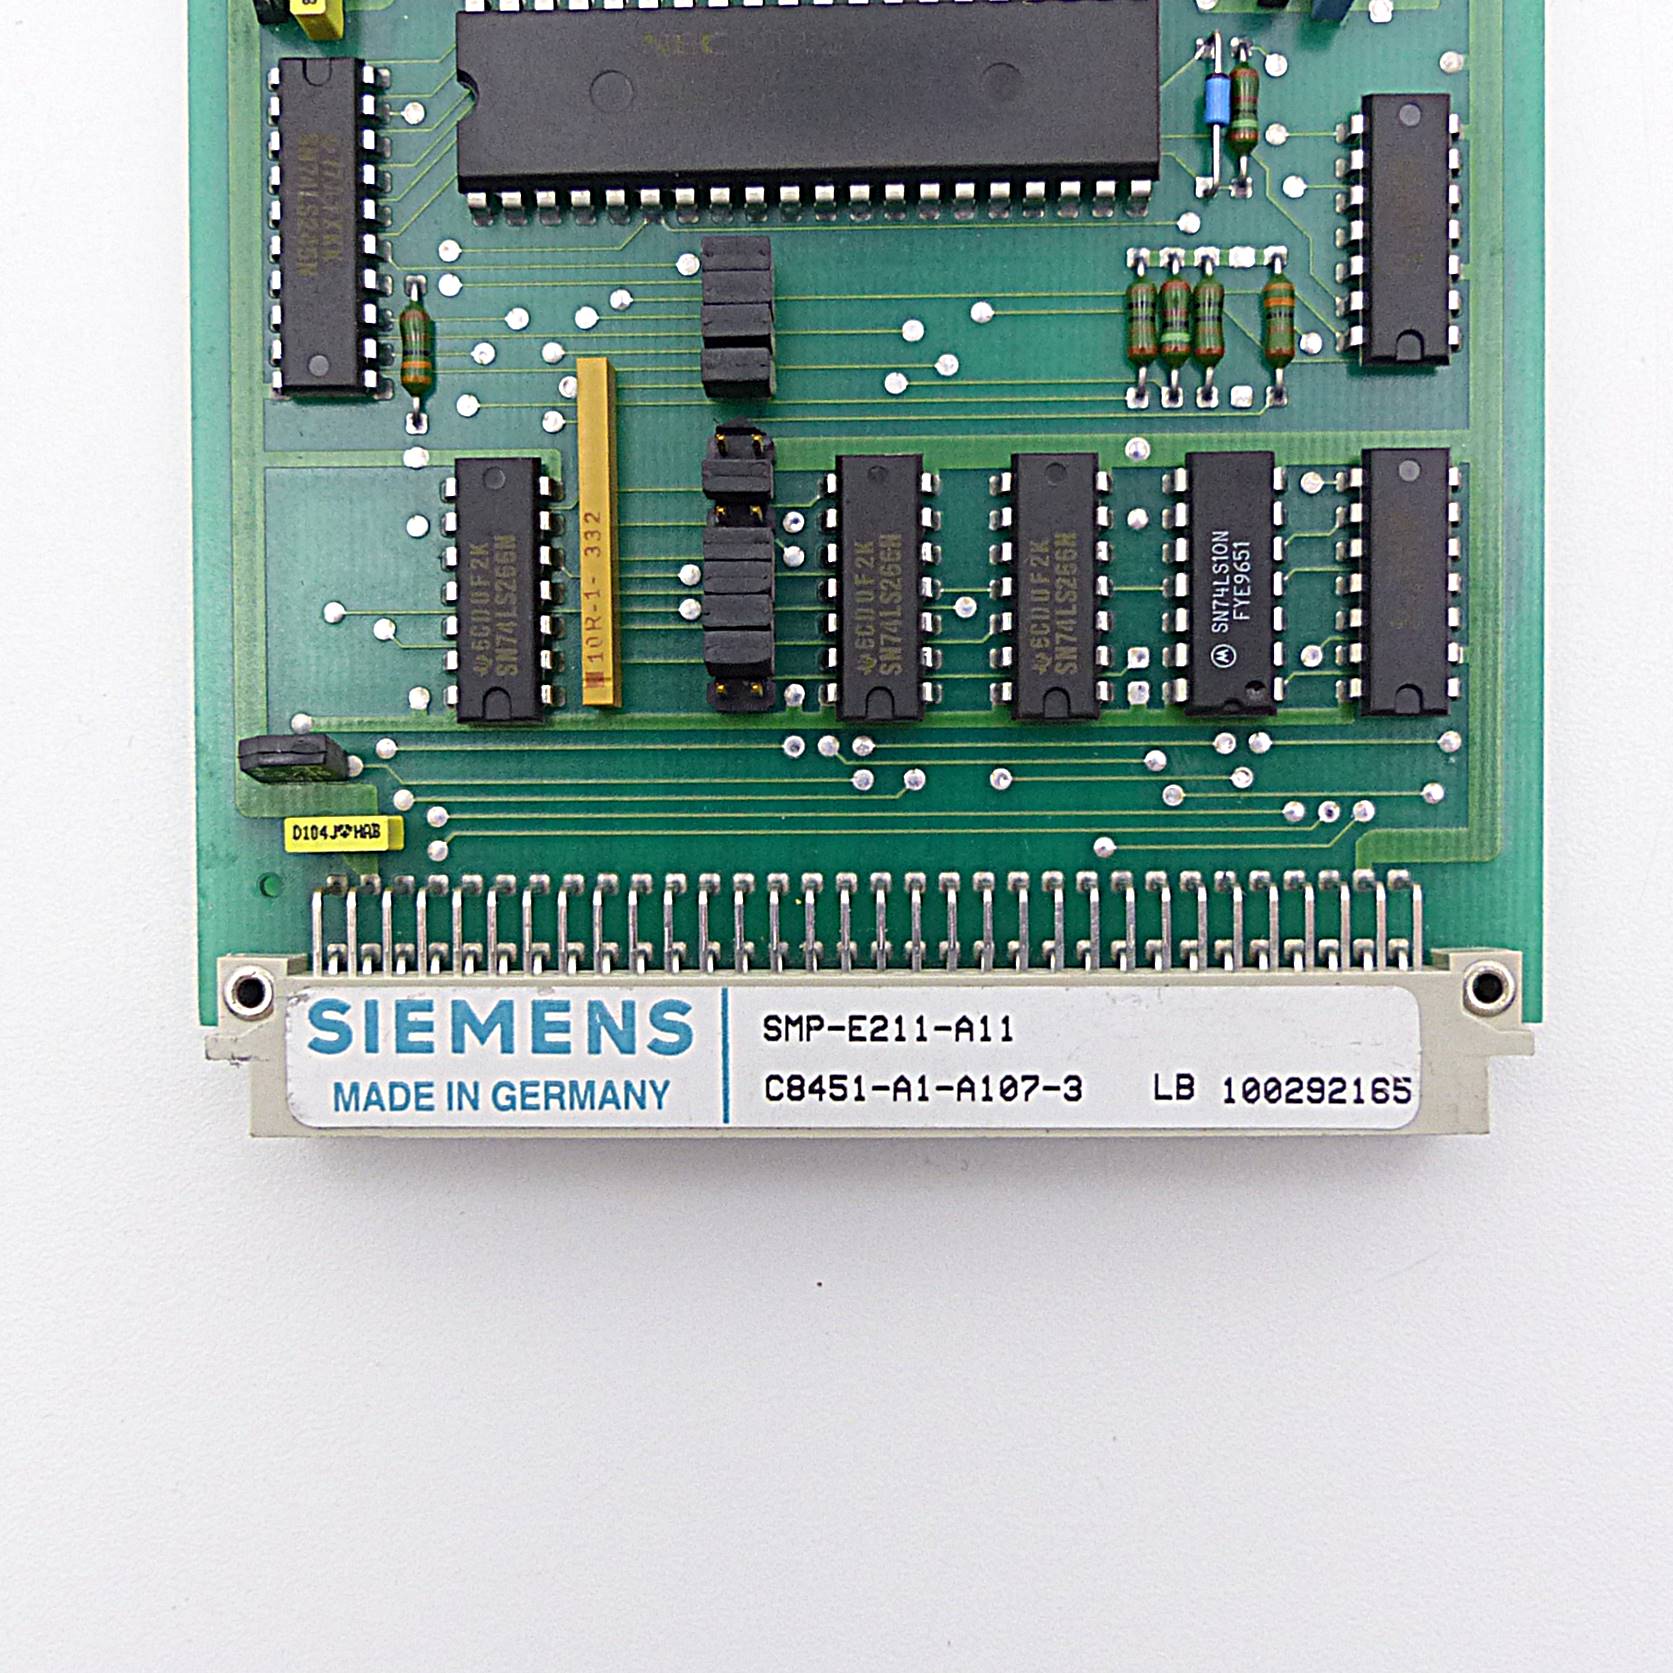 SMP-E211-A11 